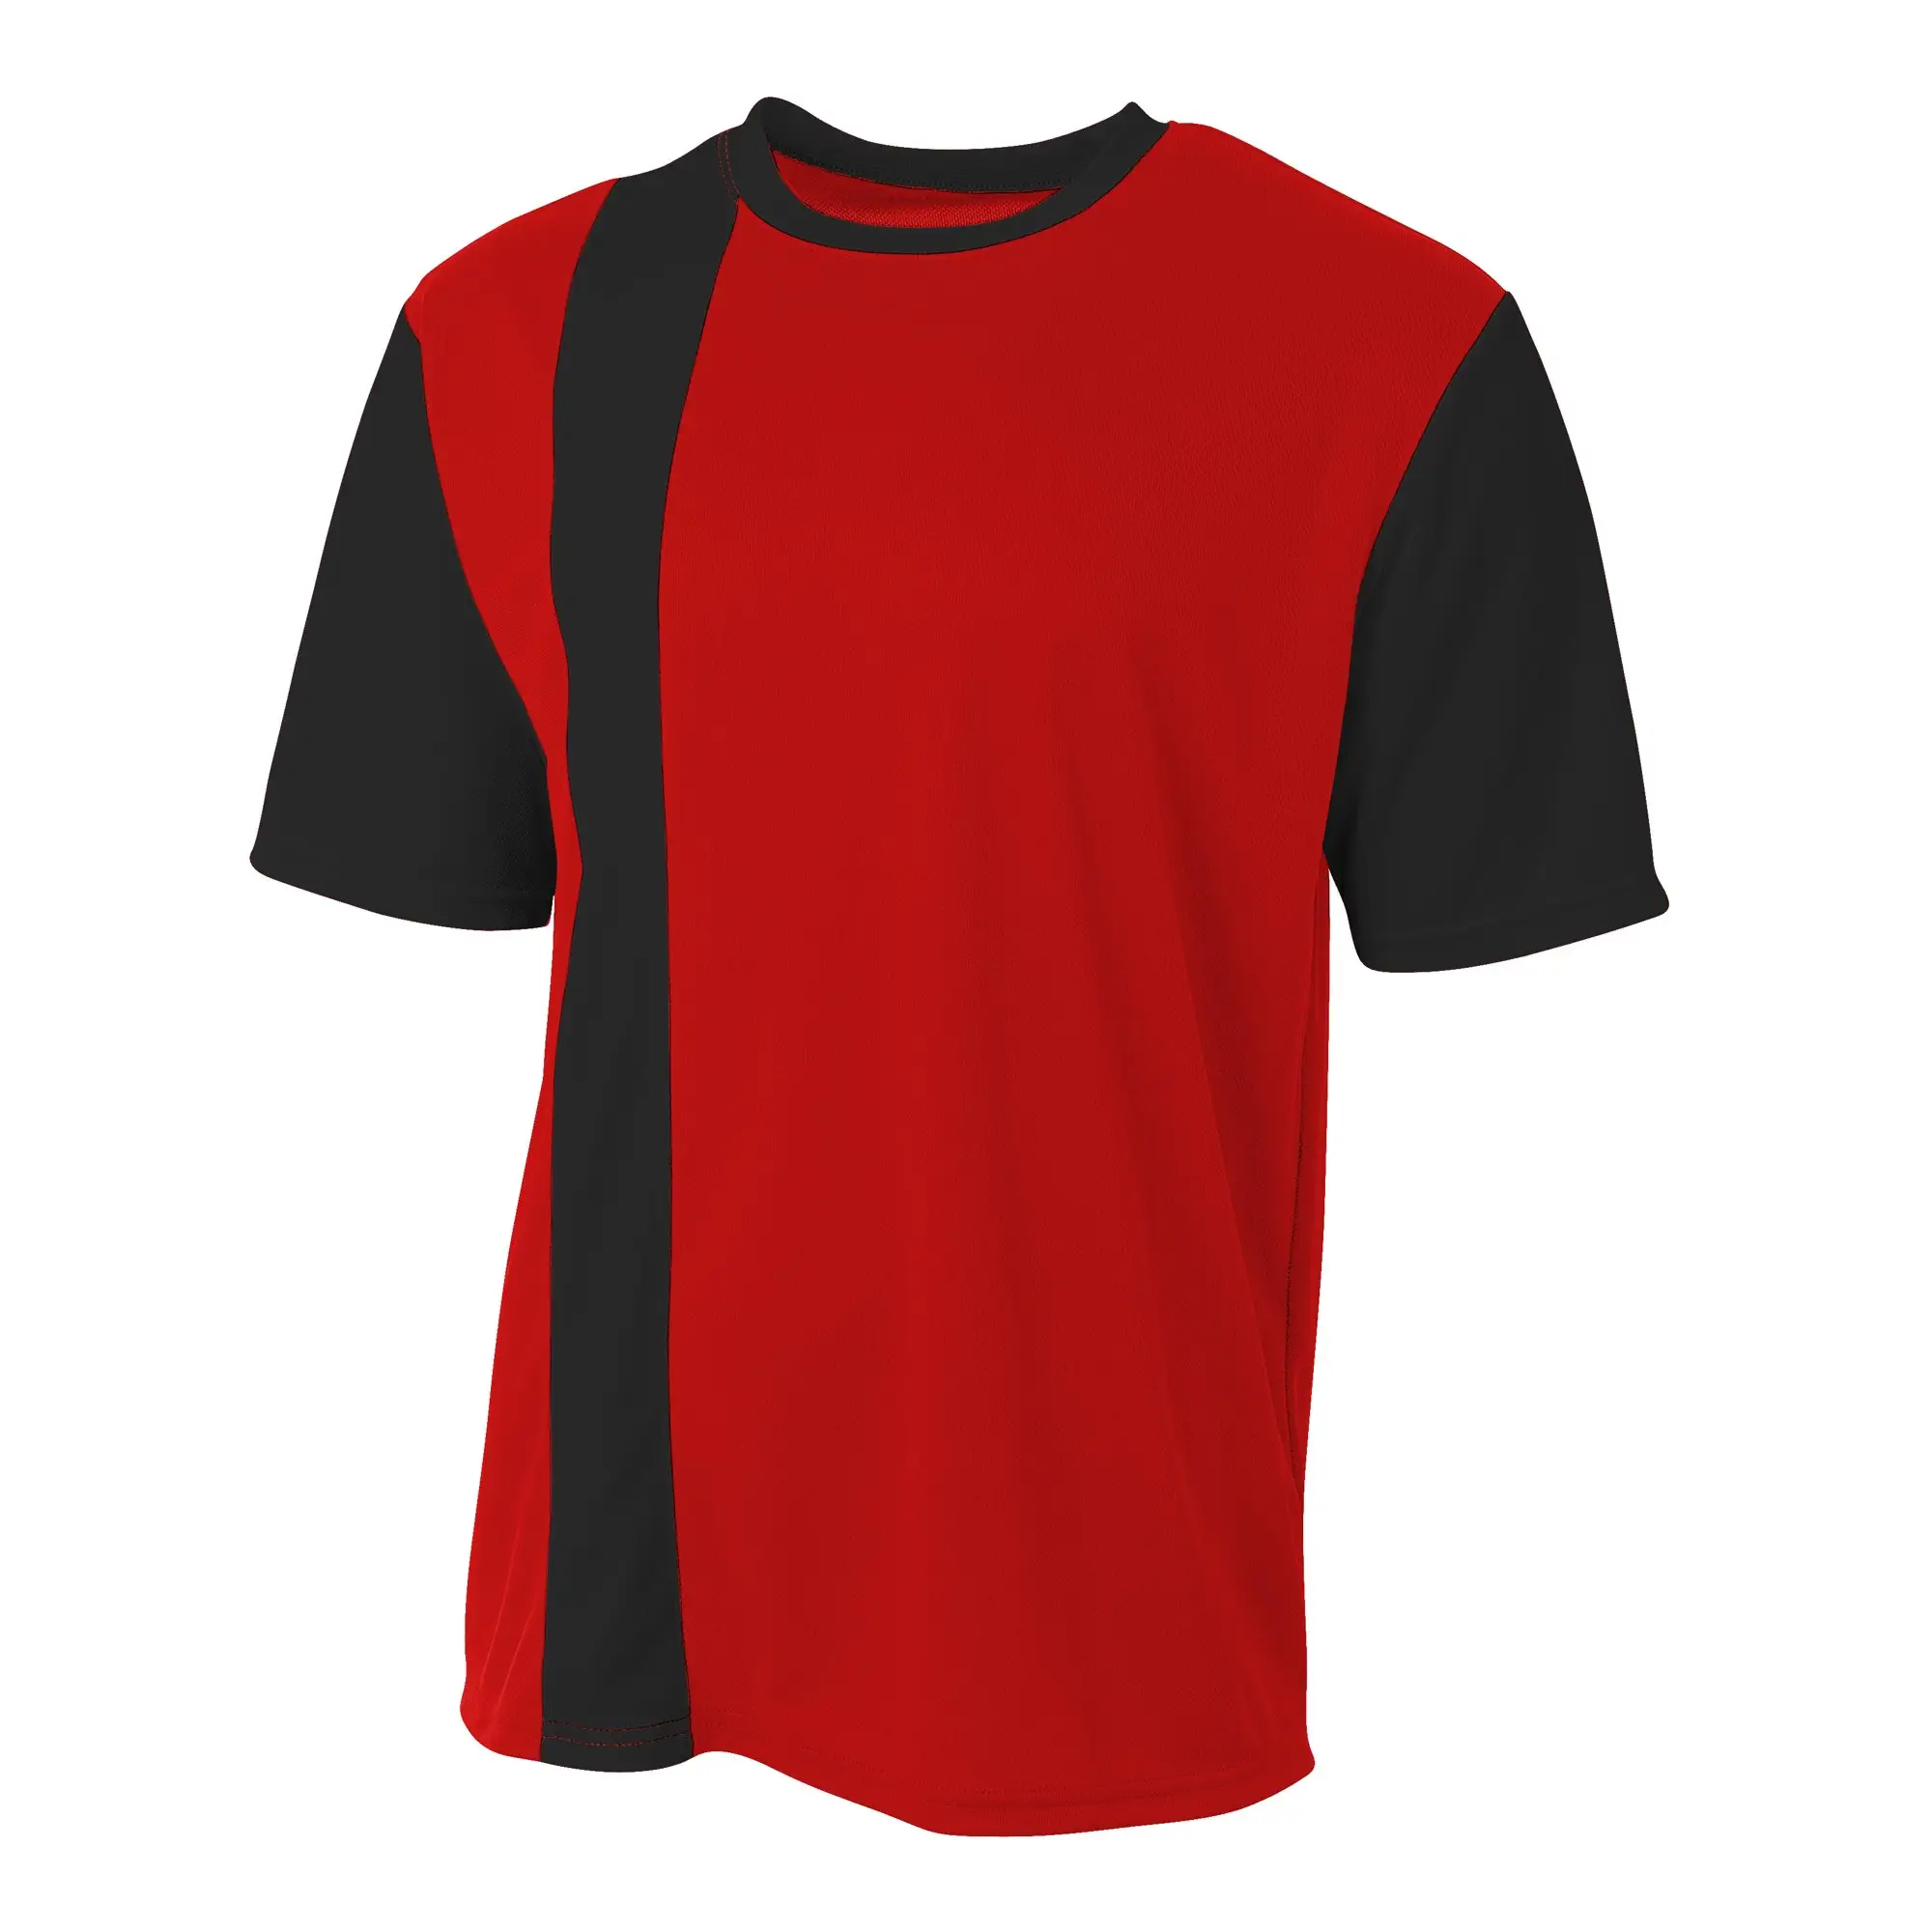 Kaliteli futbol formaları toptan kişiselleştirilmiş üniforma kitleri özel son tasarım futbol forması